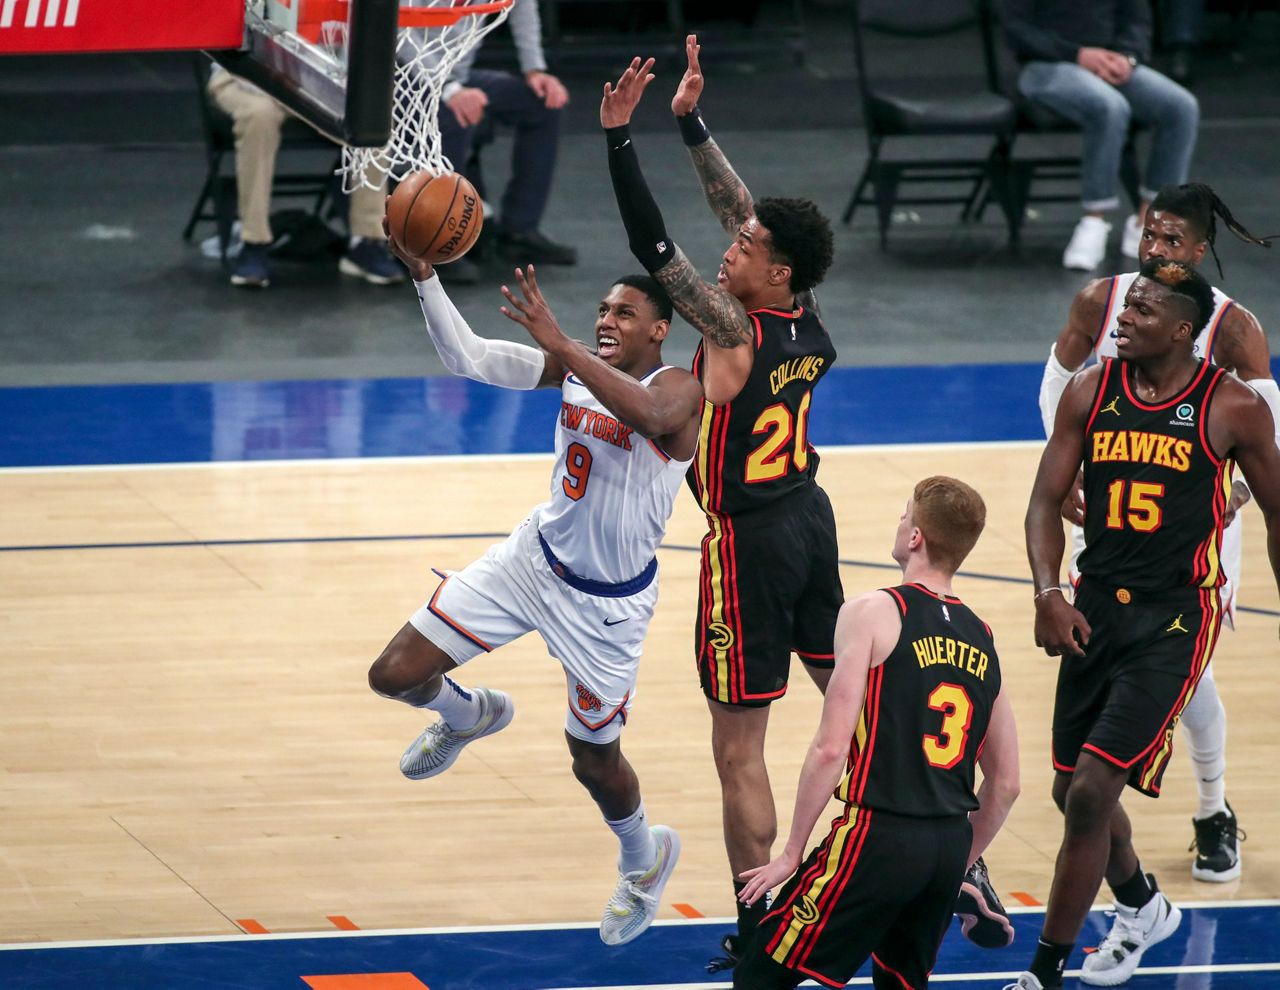 Knicks' NBA-Leading 8-Game Win Streak Ends Versus Raptors